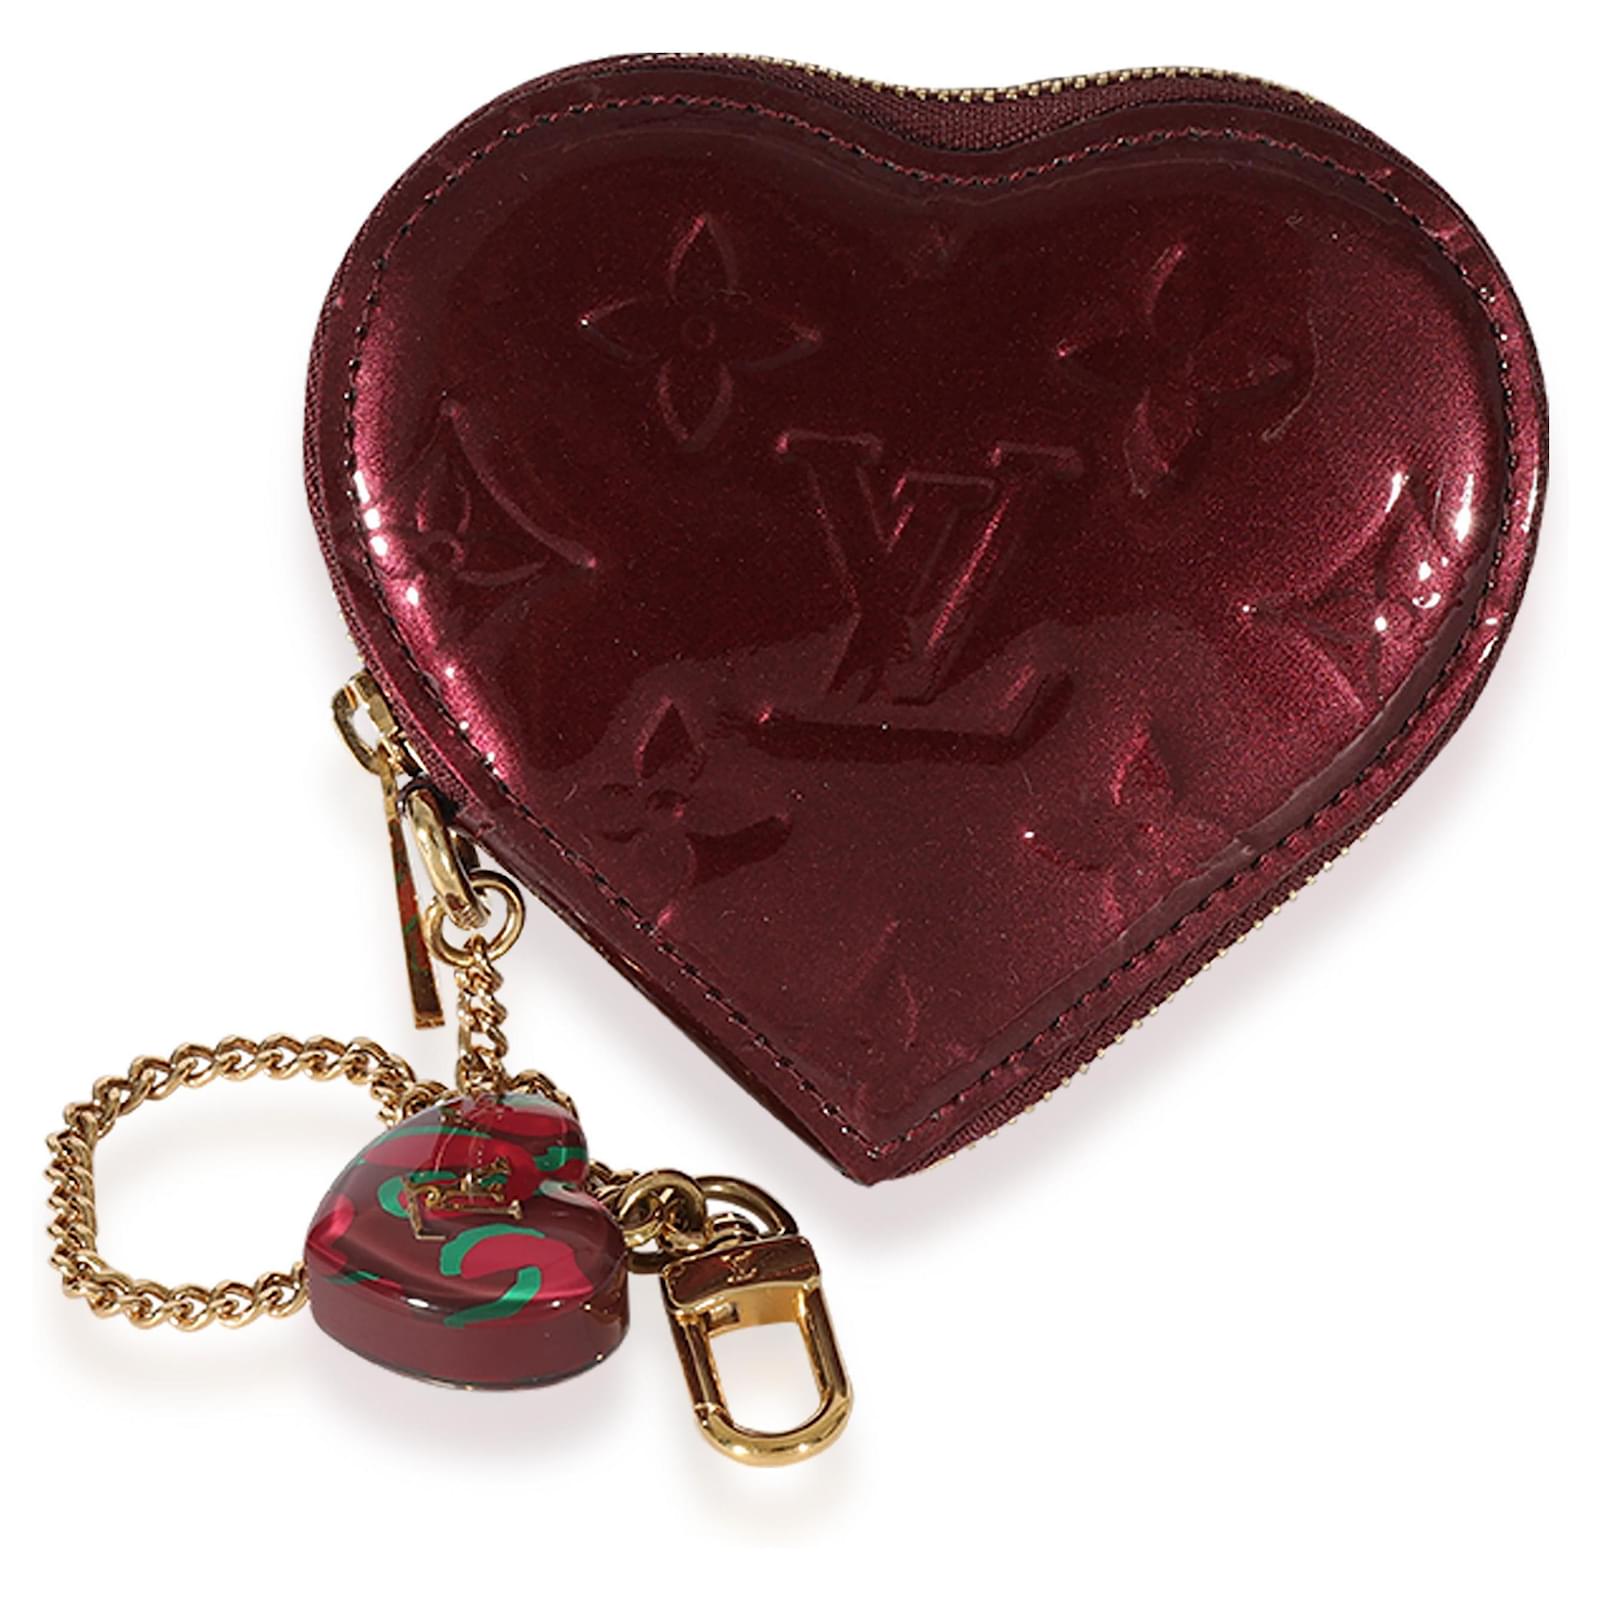 vuitton red heart purse